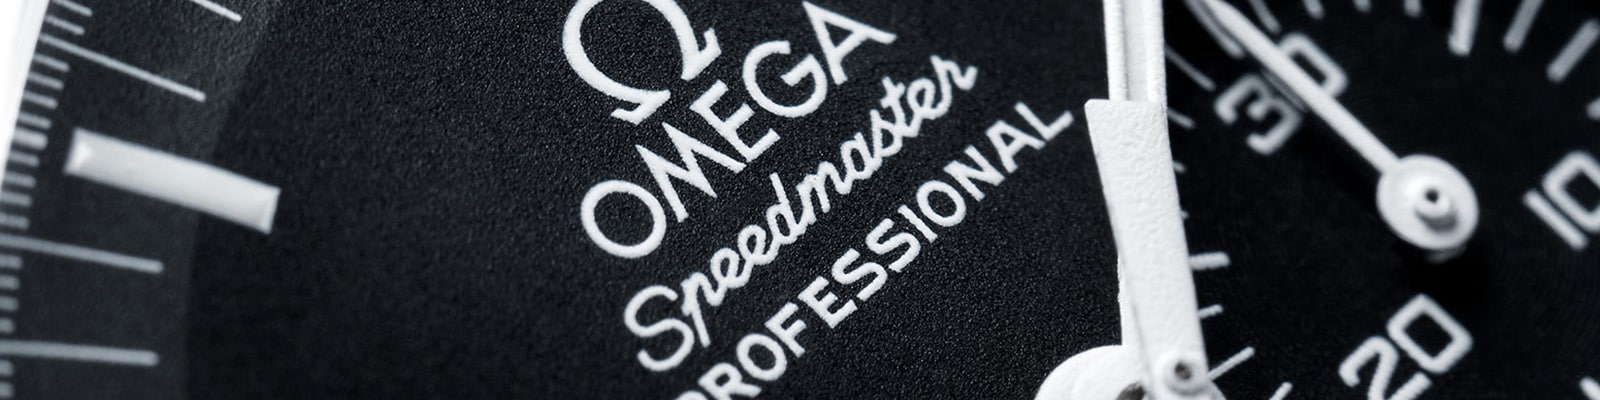 omega shop online